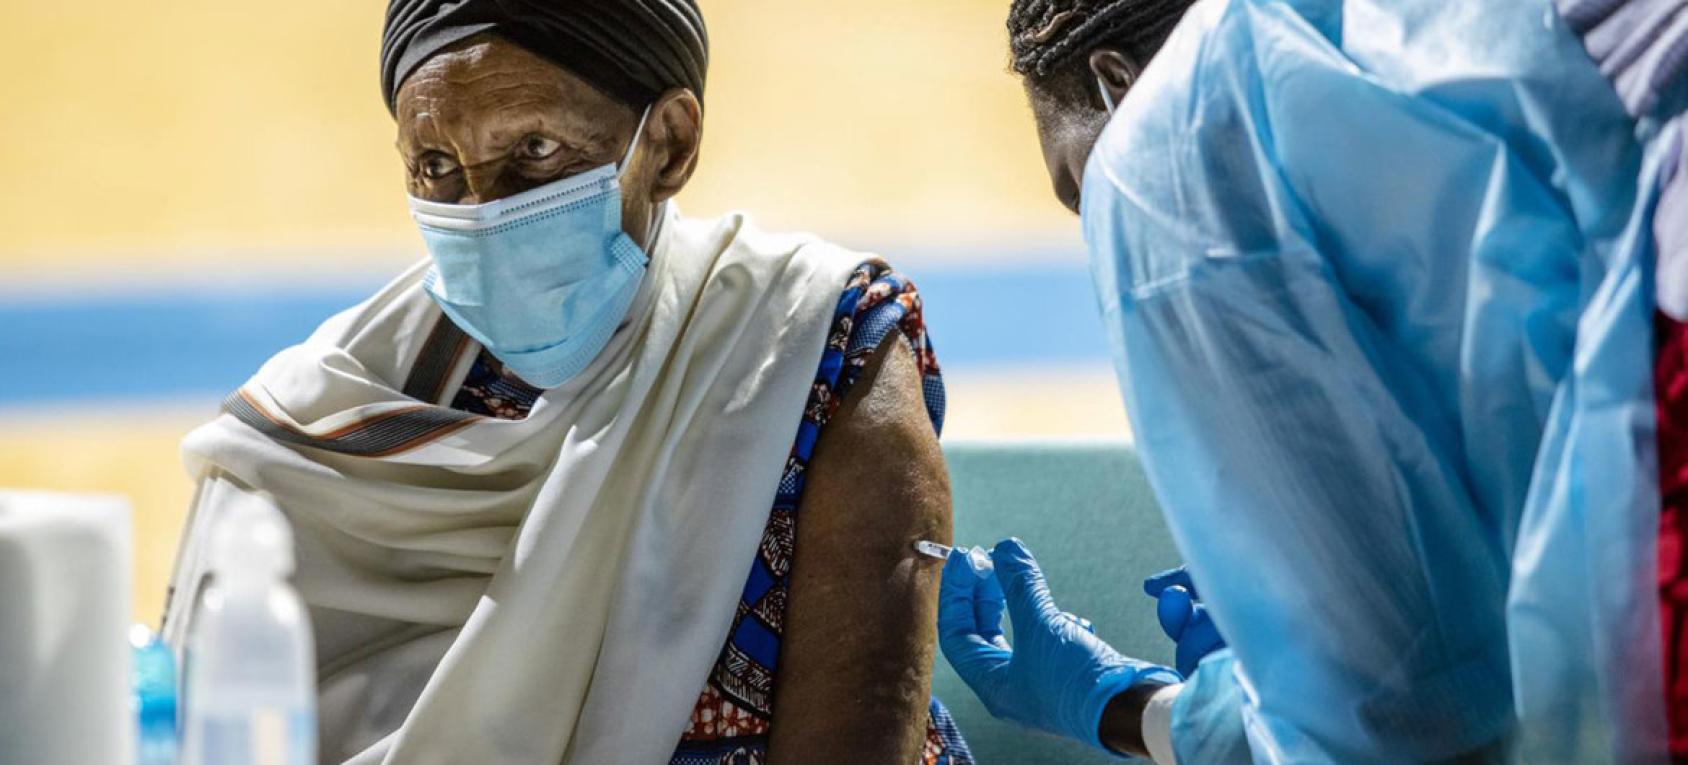 一个戴着口罩的人接受了疫苗接种。